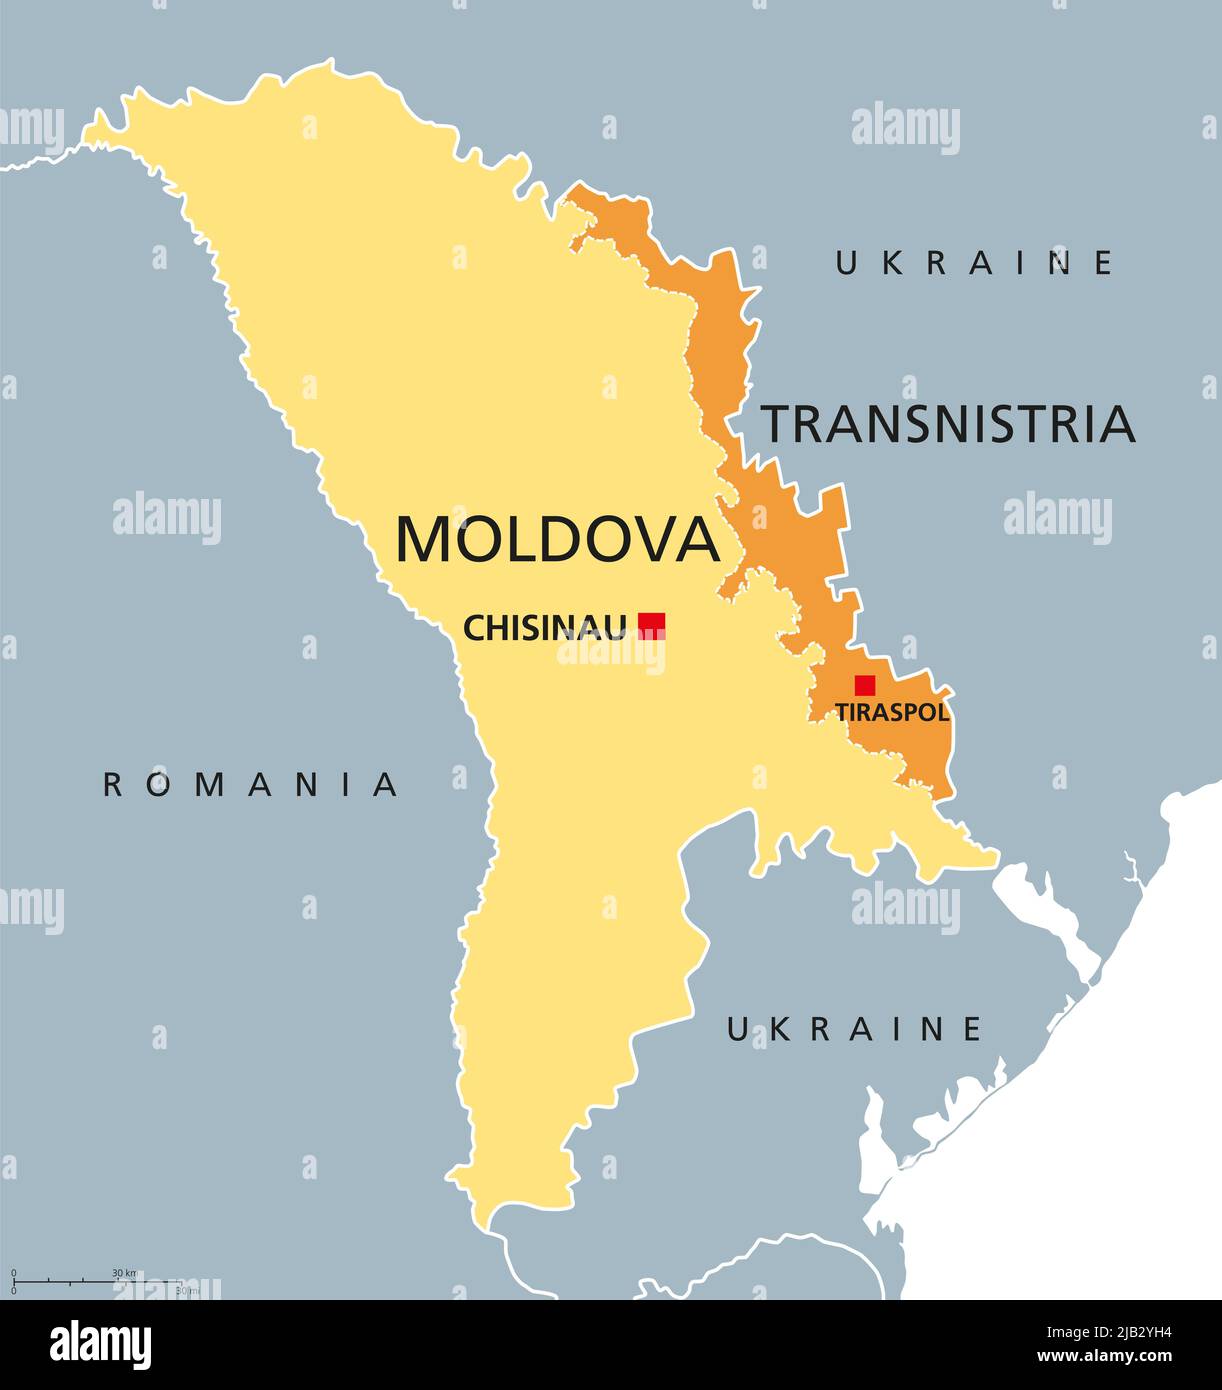 Moldova and Transnistria, political map. Republic of Moldova, with capital Chisinau, and the disputed Pridnestrovian Moldavian Republic, PMR. Stock Photo